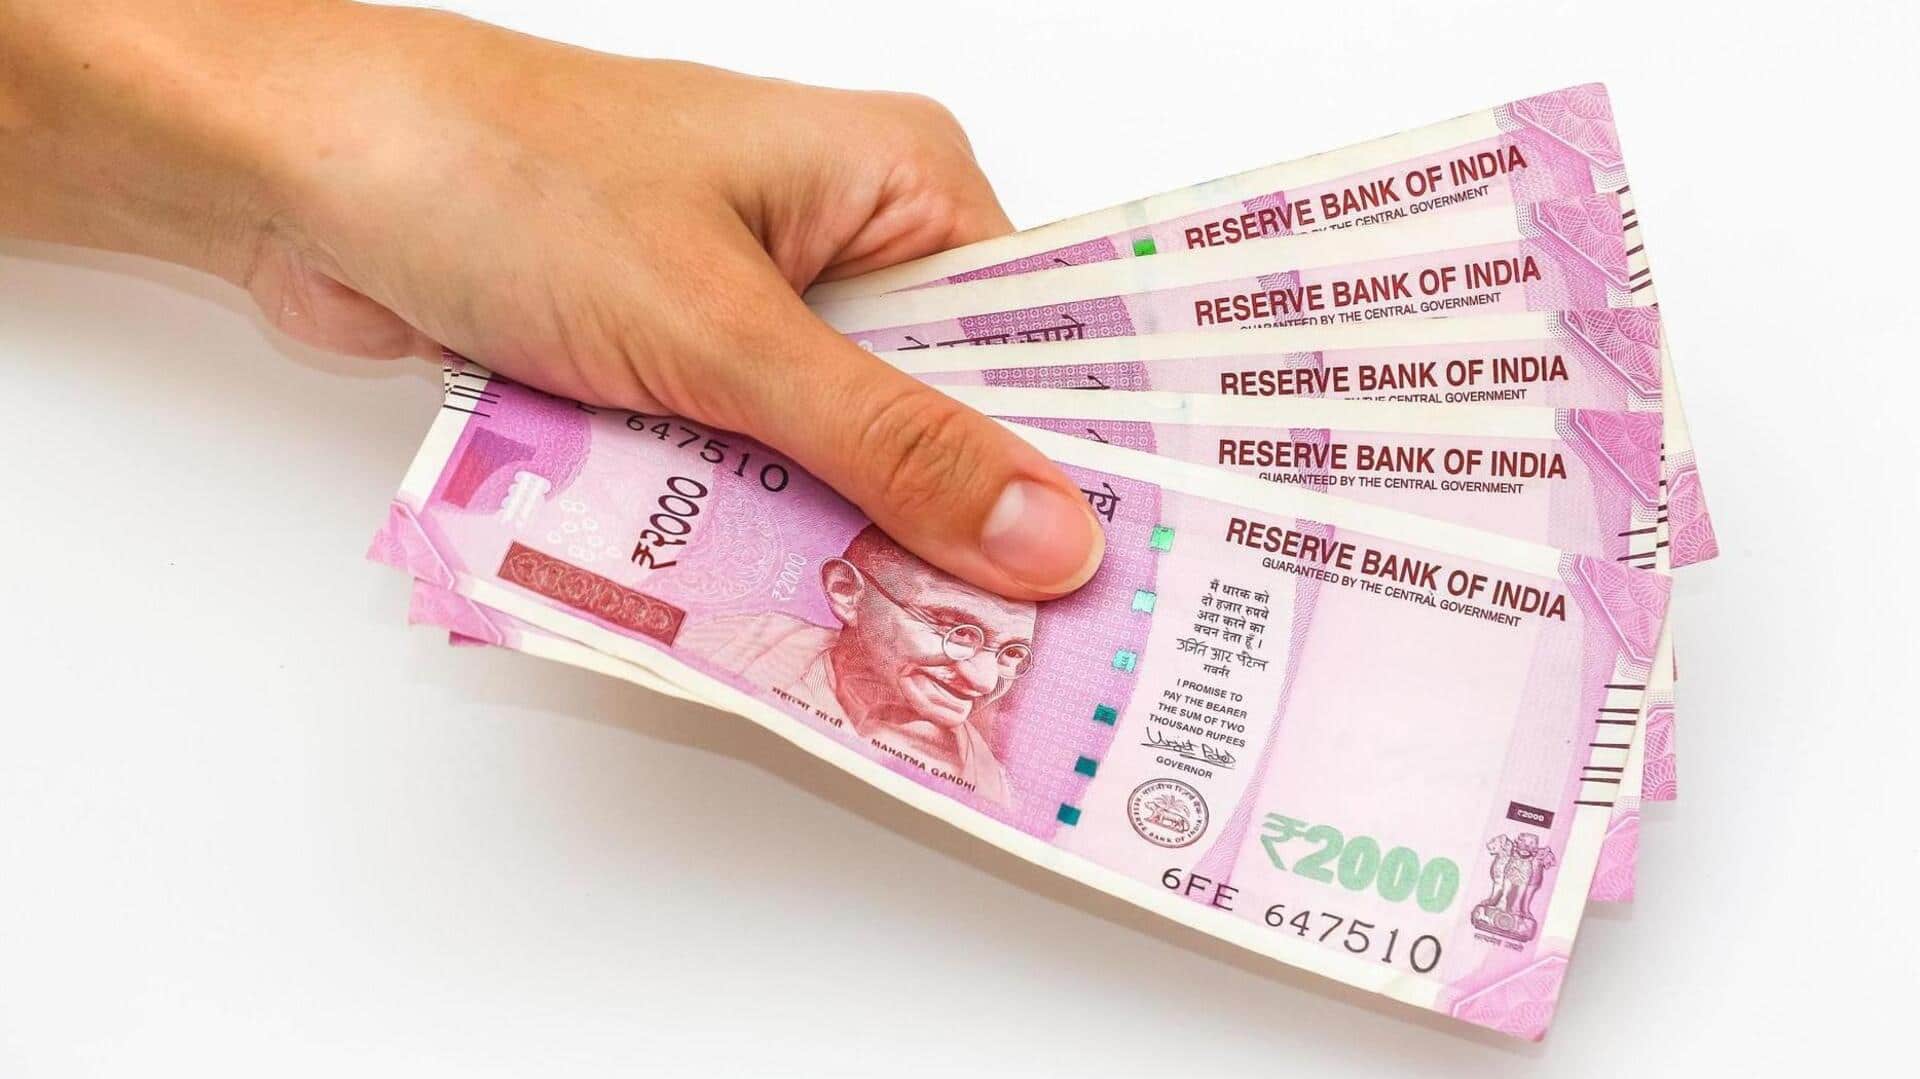 2,000 रुपये के नोट बदलने के लिए पहचान पत्र की मांग करने वाली याचिका खारिज